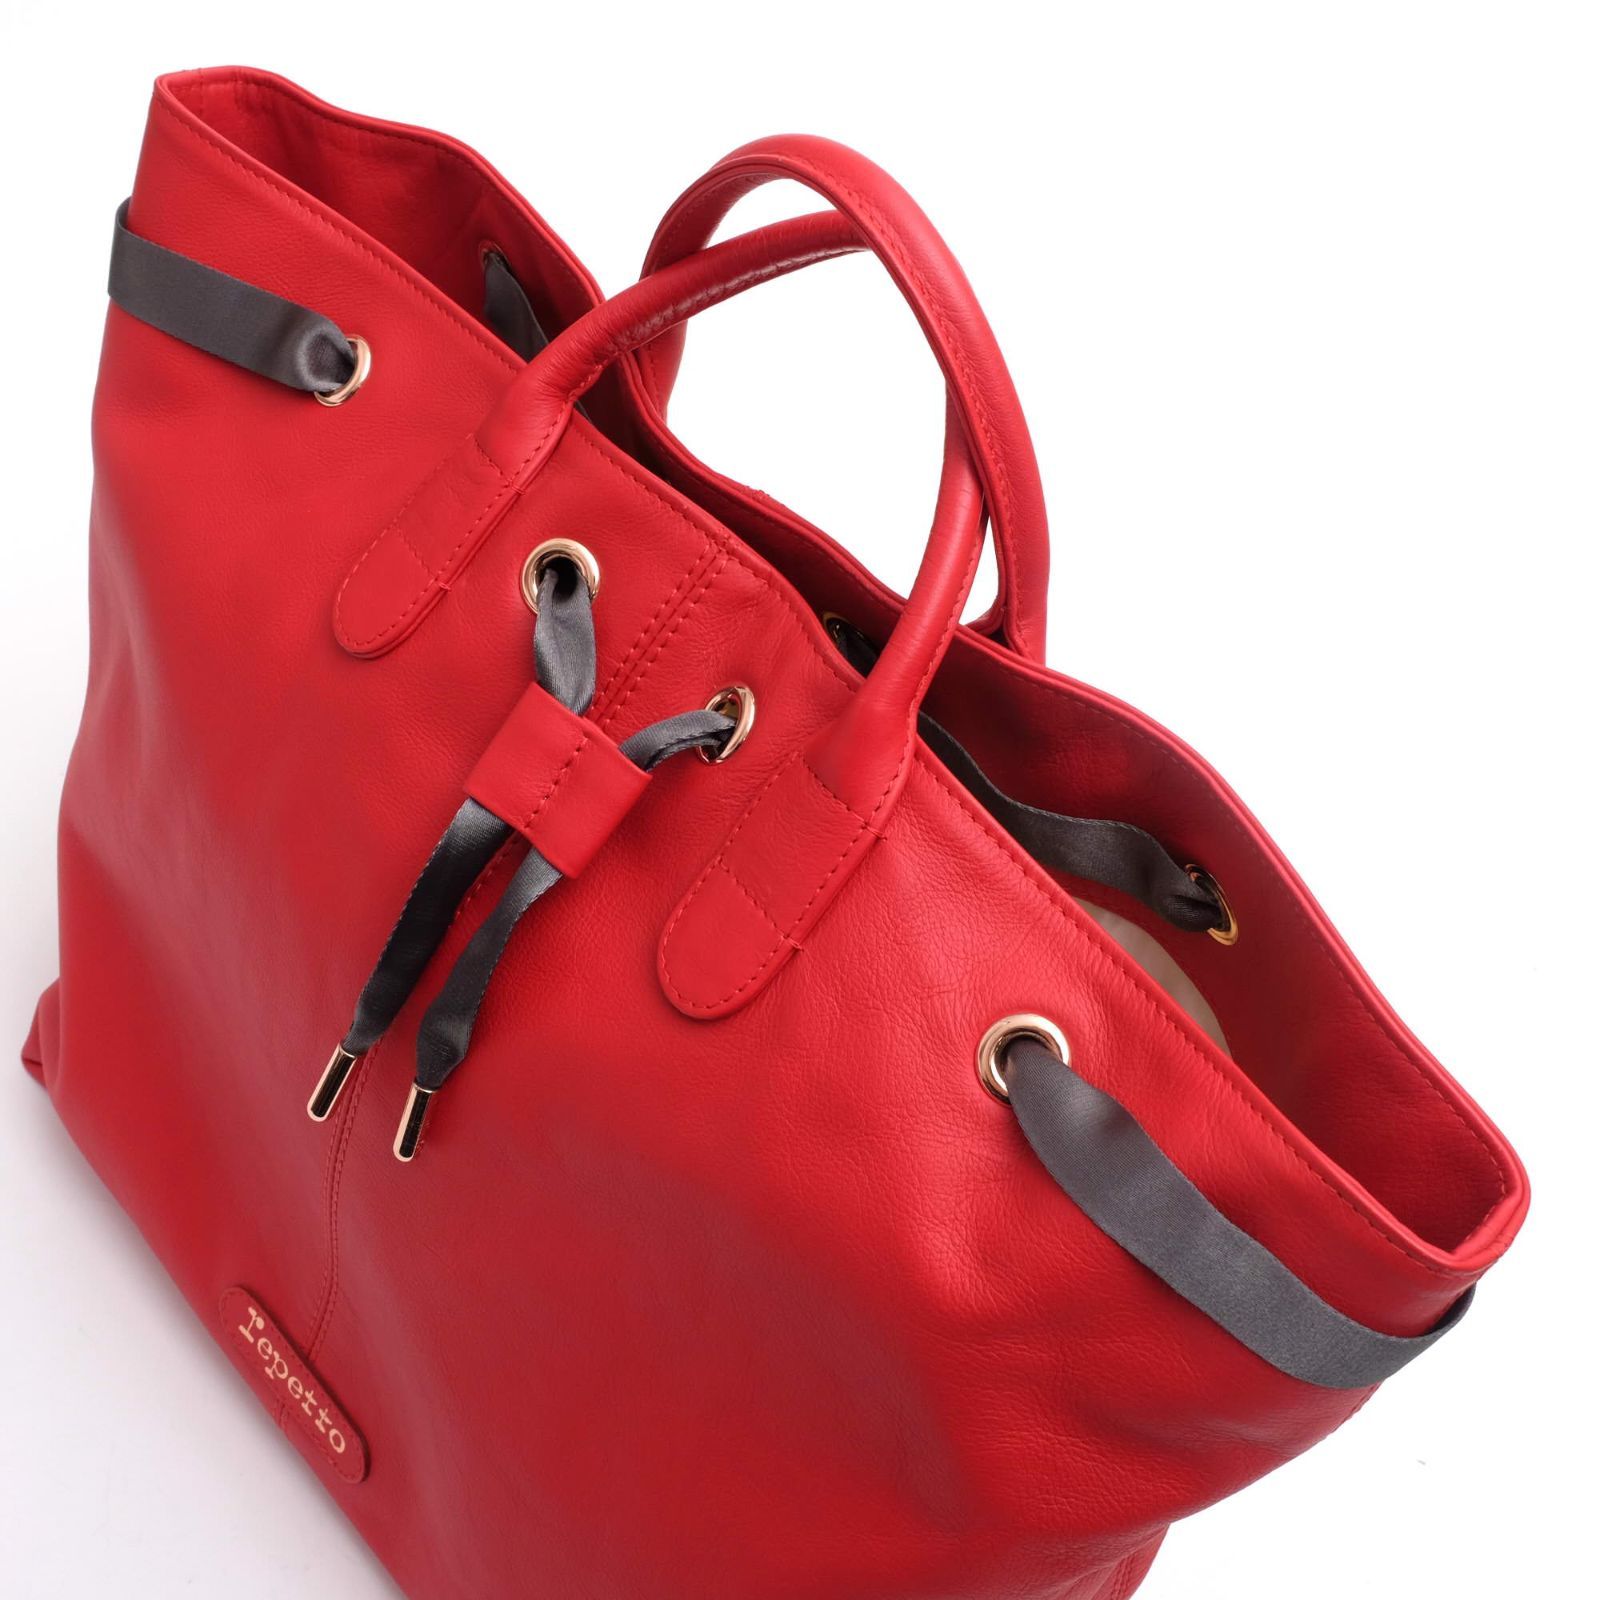 レペット／Repetto バッグ トートバッグ 鞄 ハンドバッグ レディース 女性 女性用レザー 革 本革 レッド 赤 Tote Arabesque  アラベスク - メルカリ